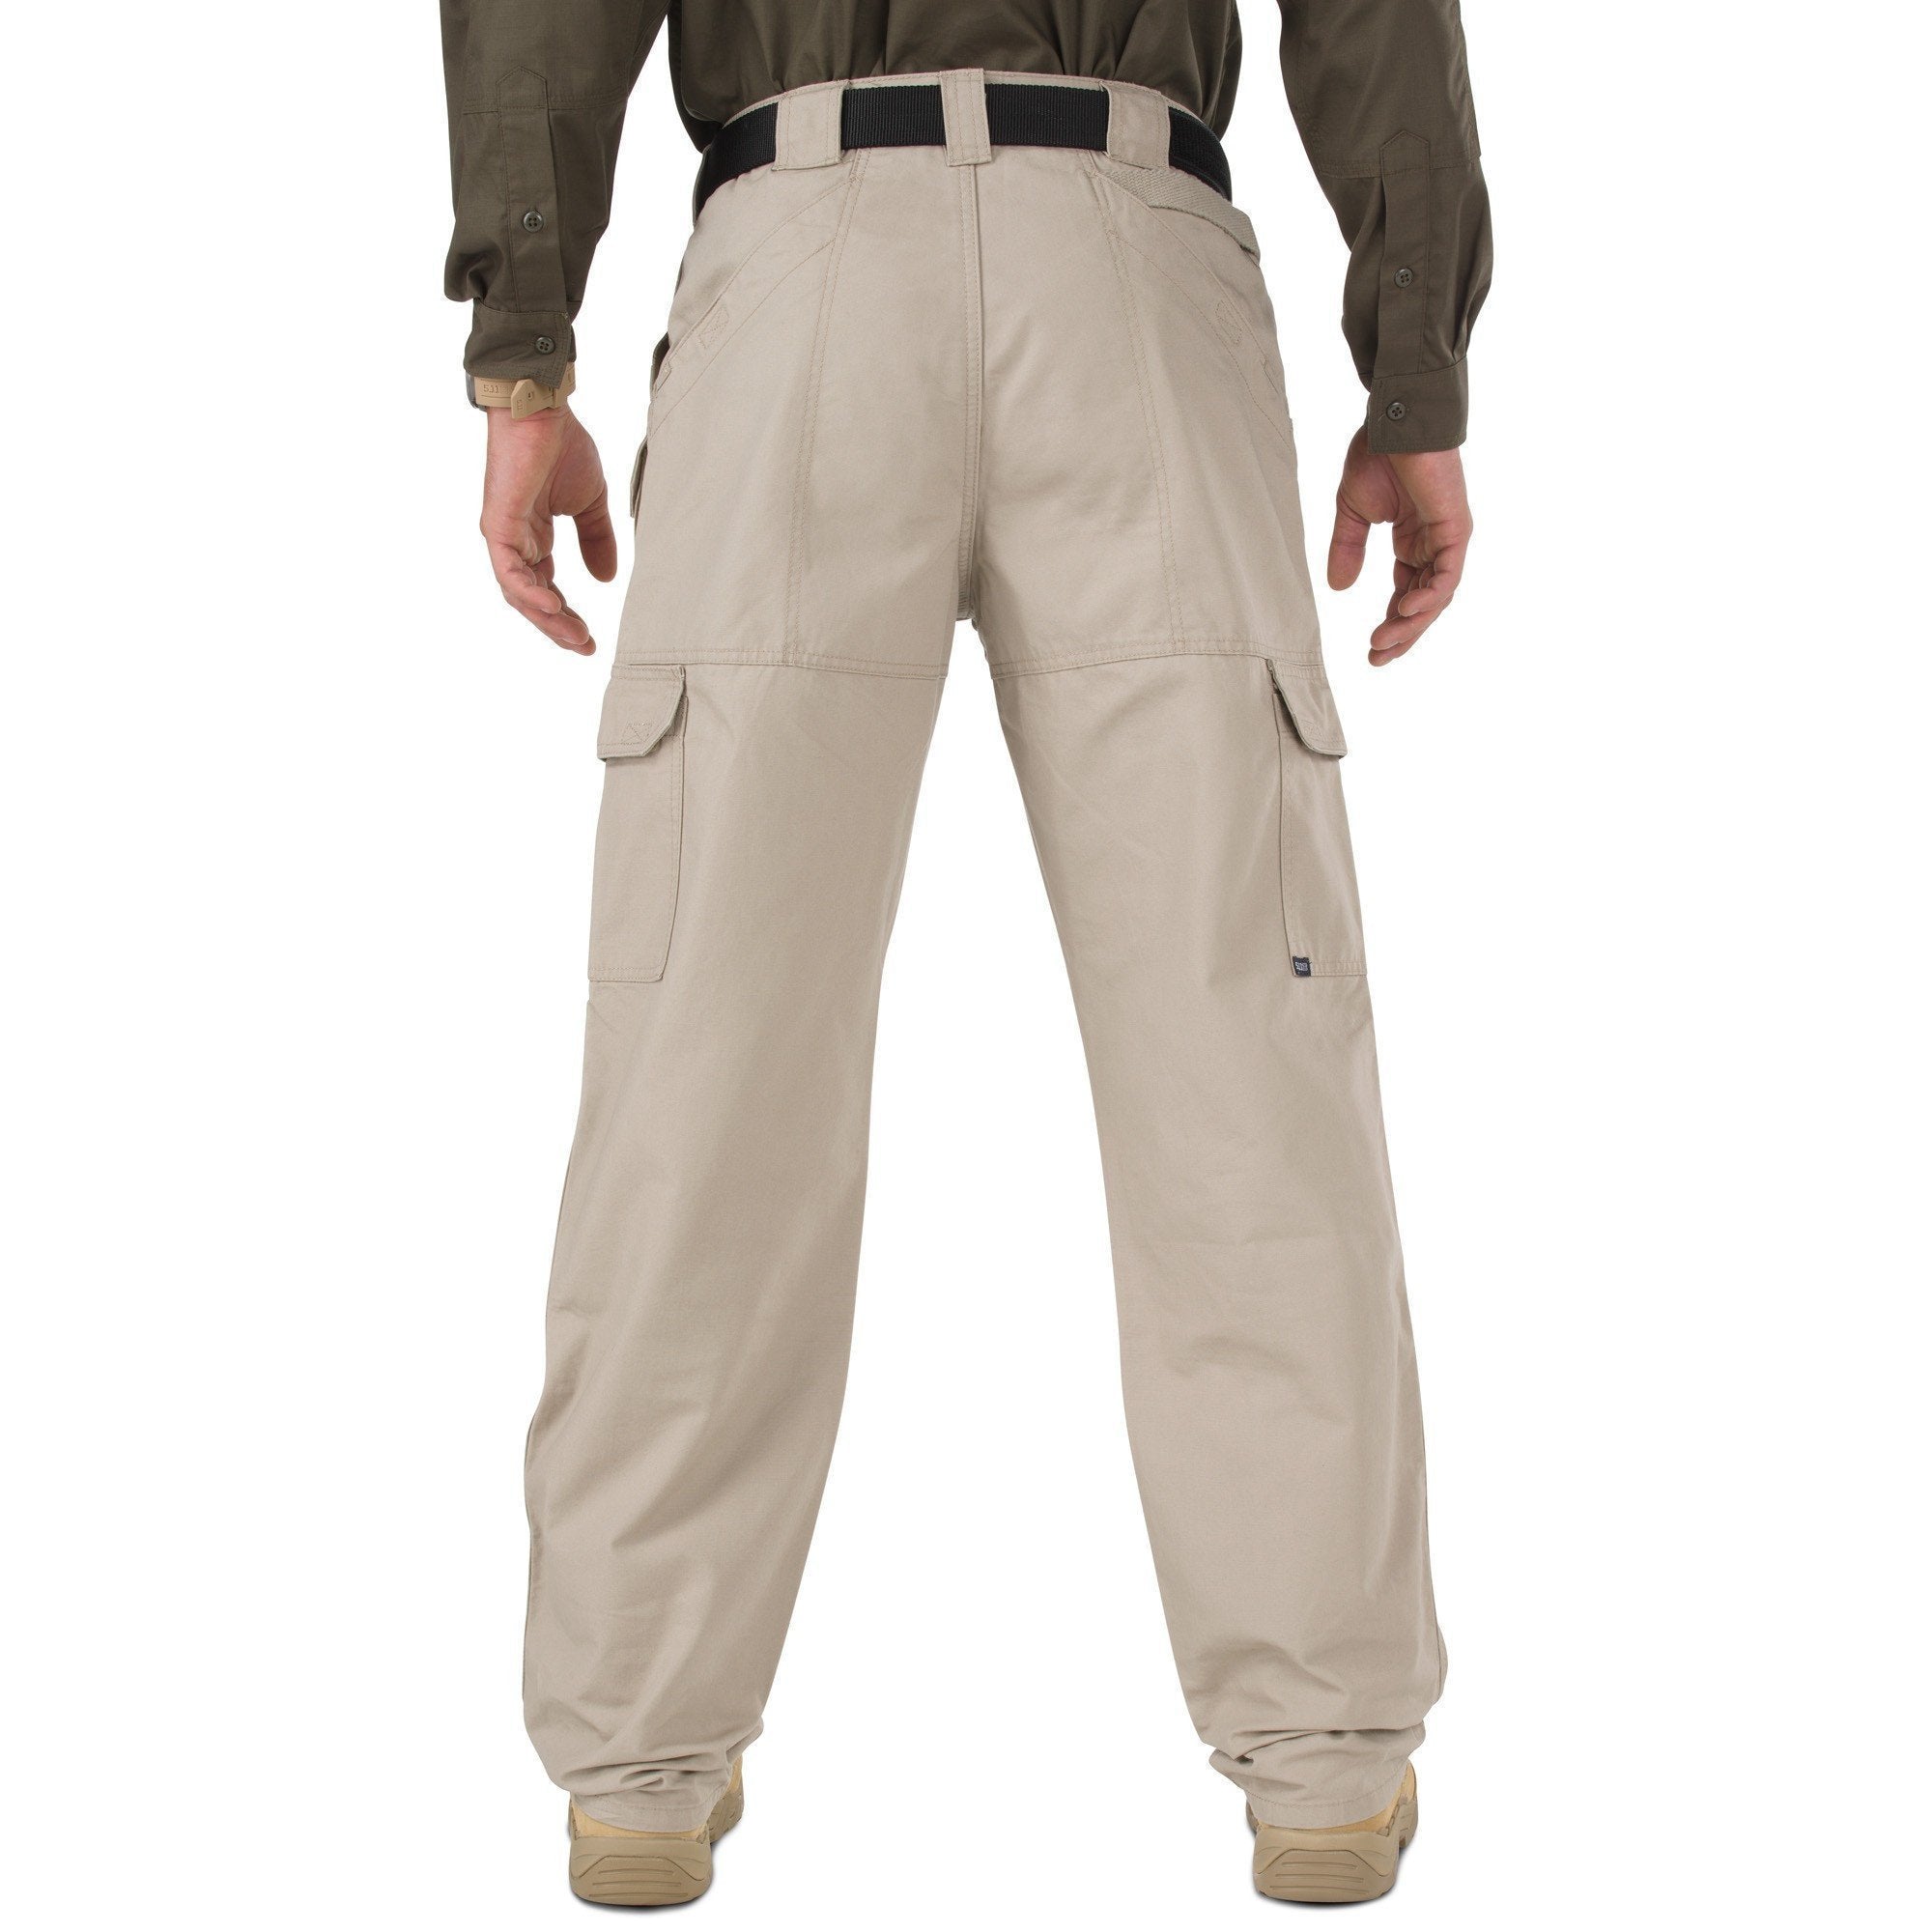 5.11 Tactical Pants - Khaki Pants 5.11 Tactical Tactical Gear Supplier Tactical Distributors Australia